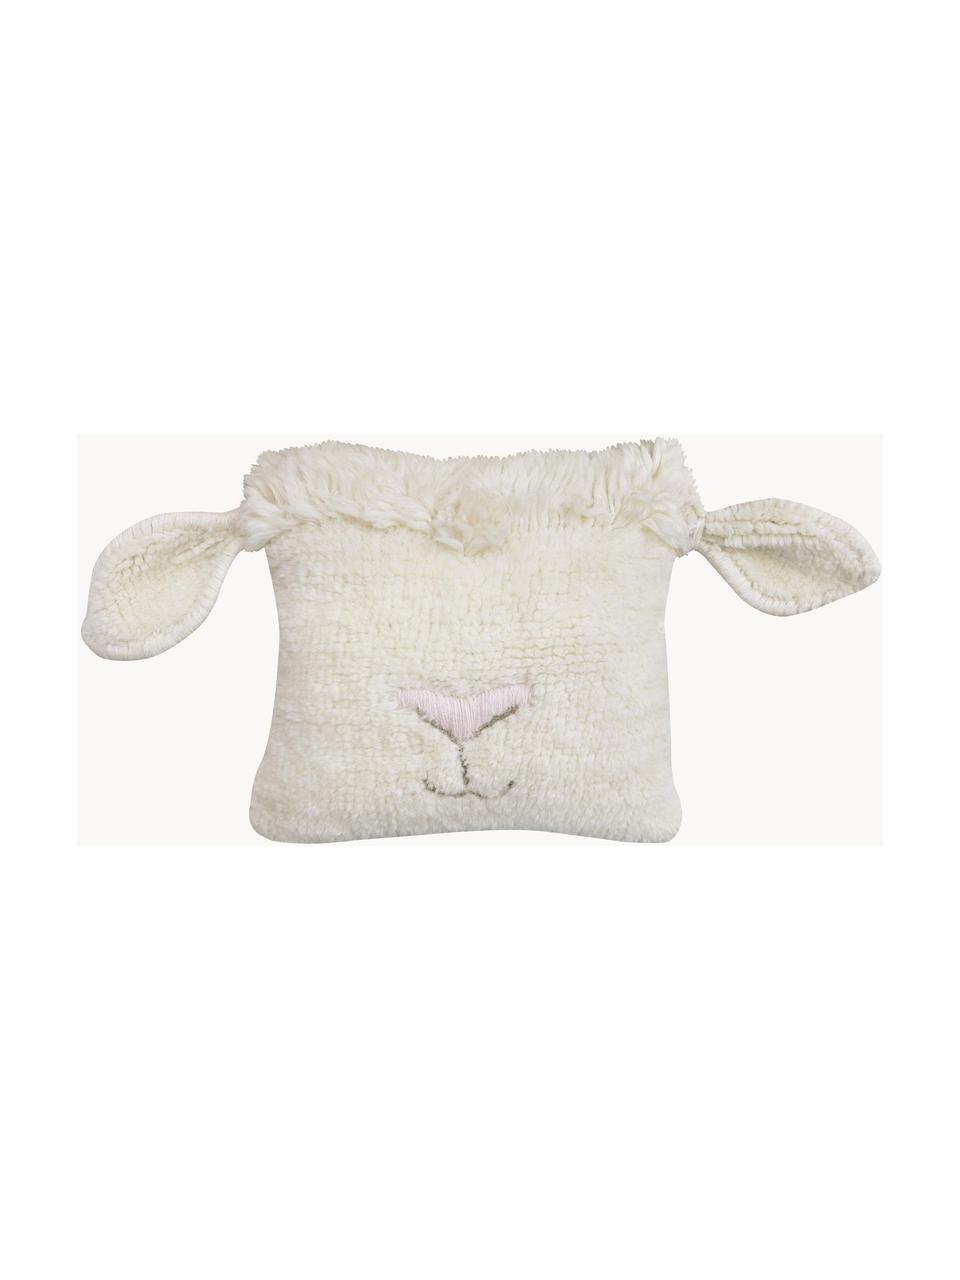 Coussin peluche en laine Sheep, Blanc cassé, rose pâle, larg. 37 x long. 34 cm